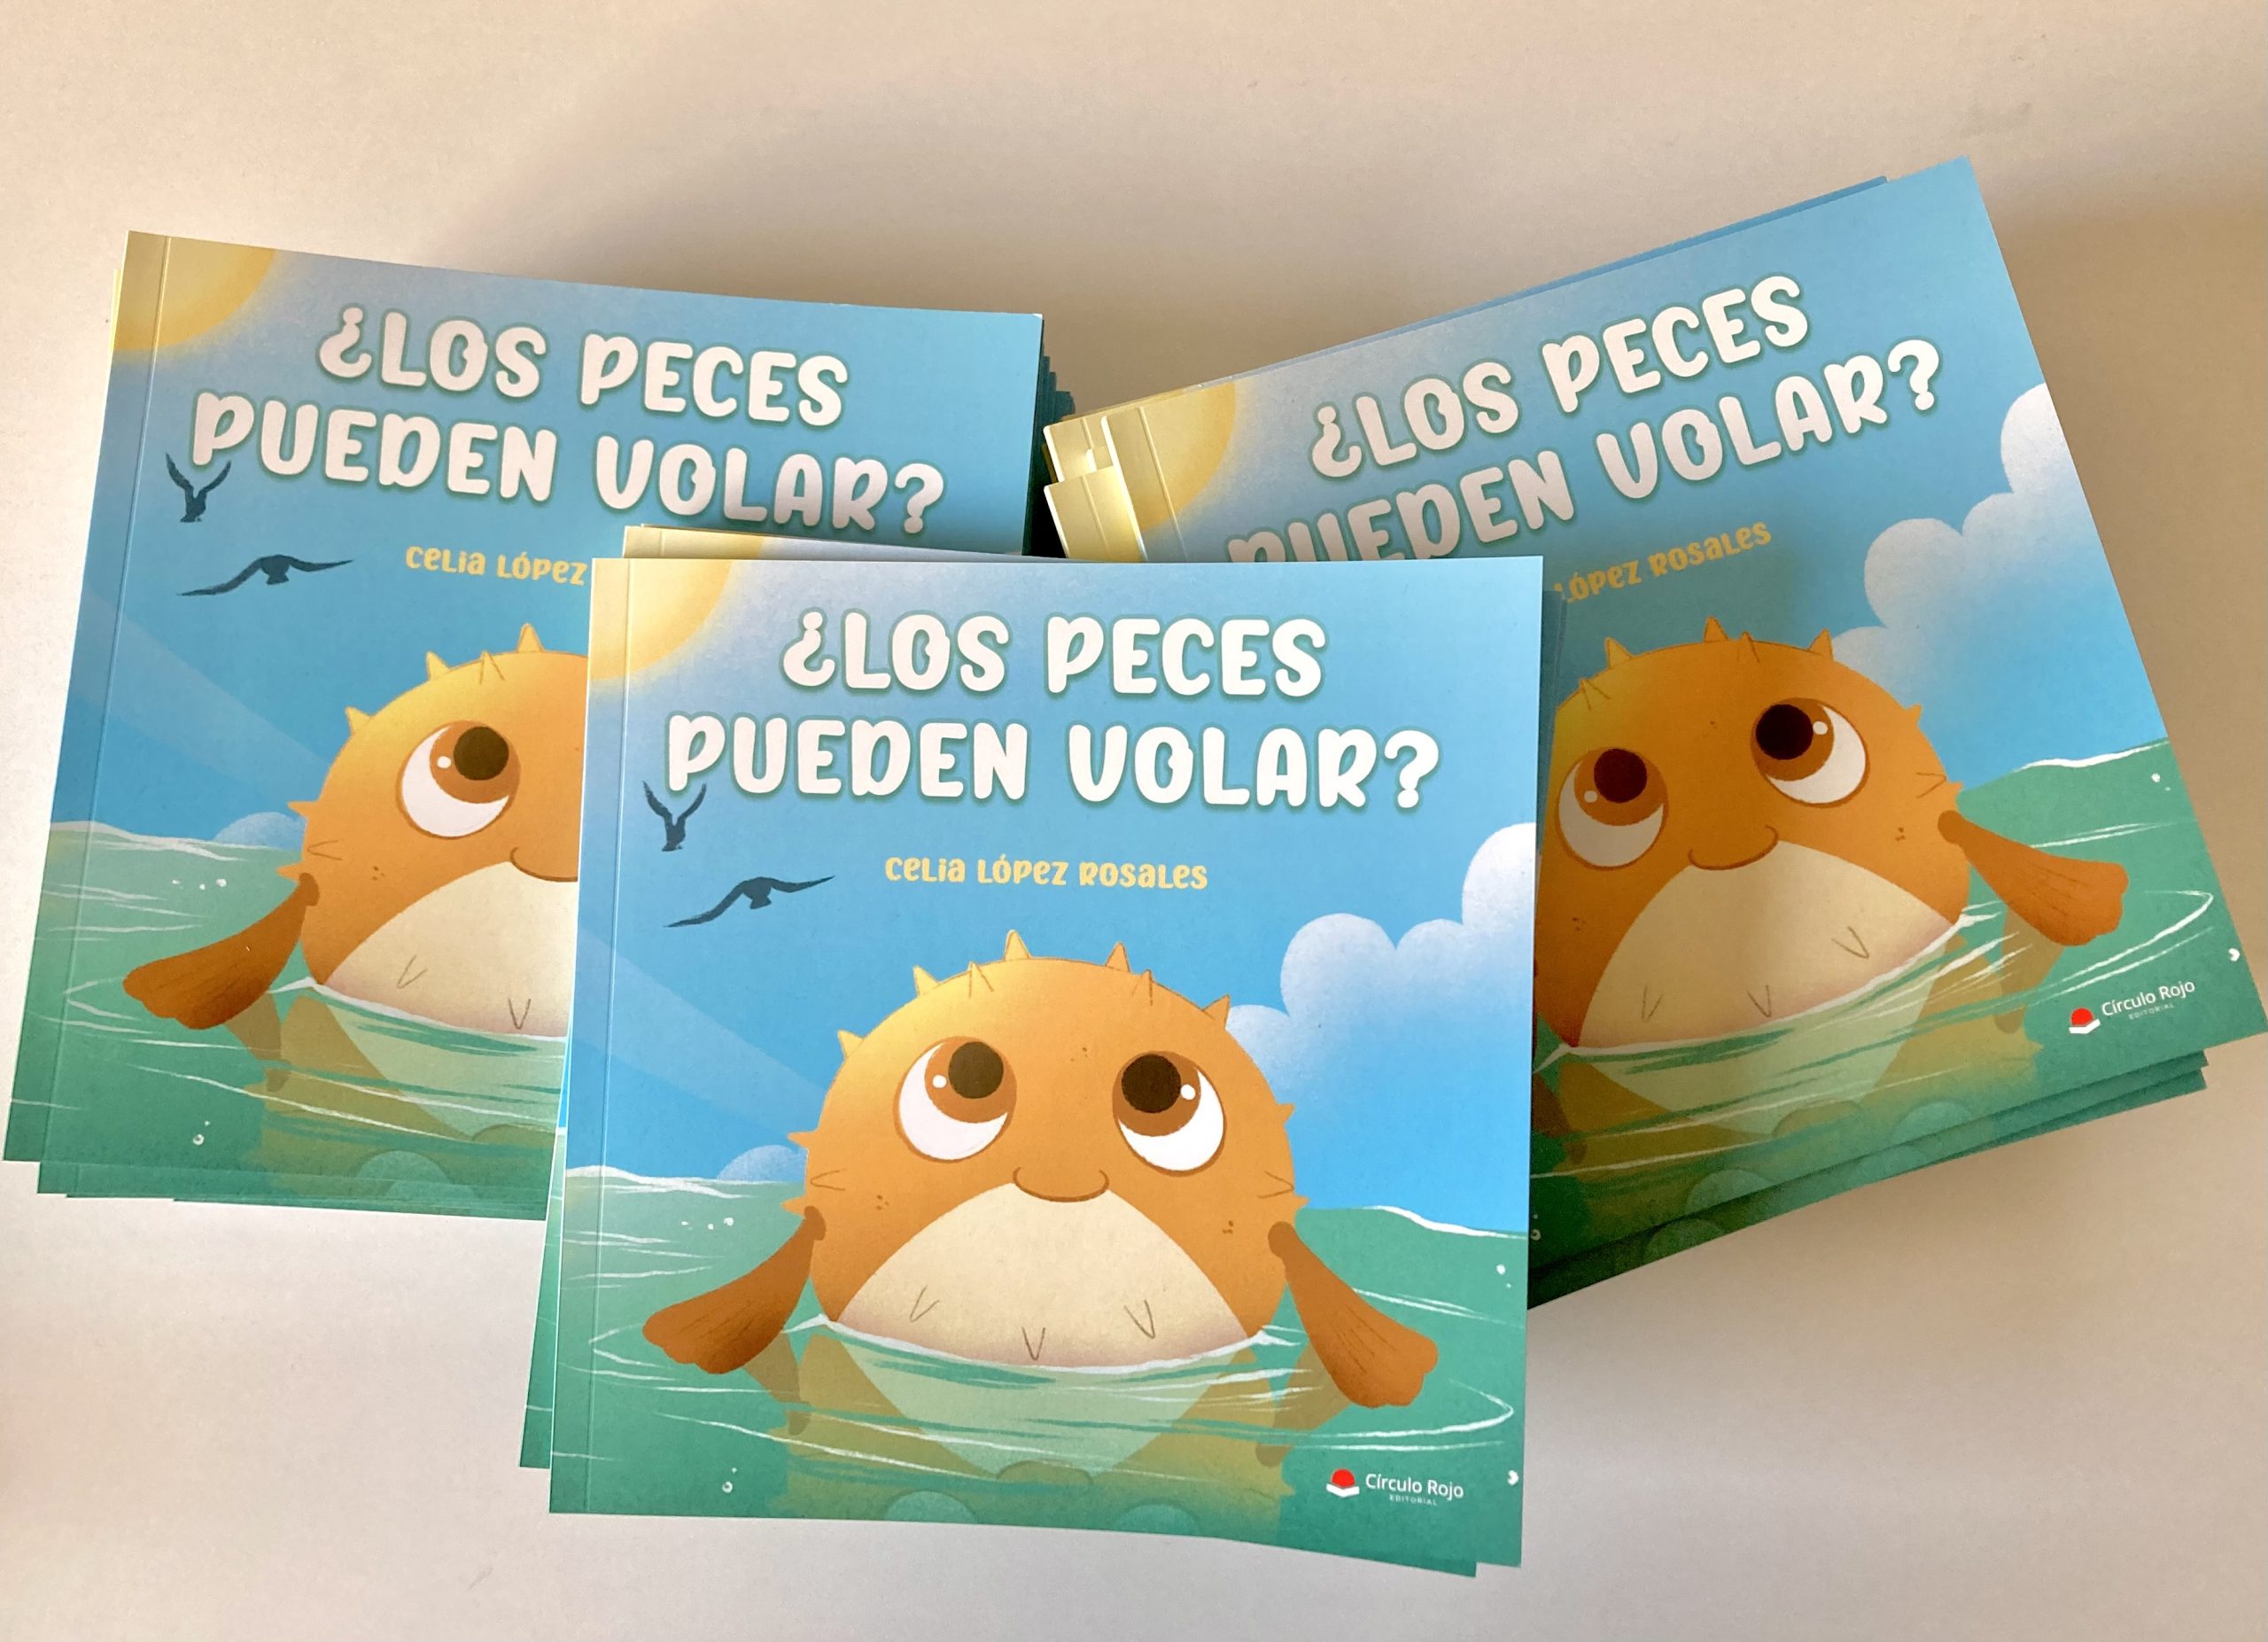 La autora Celia López Rosales, nos habla sobre “¿Los peces pueden volar?”, obra que ha publicado con Círculo Rojo.